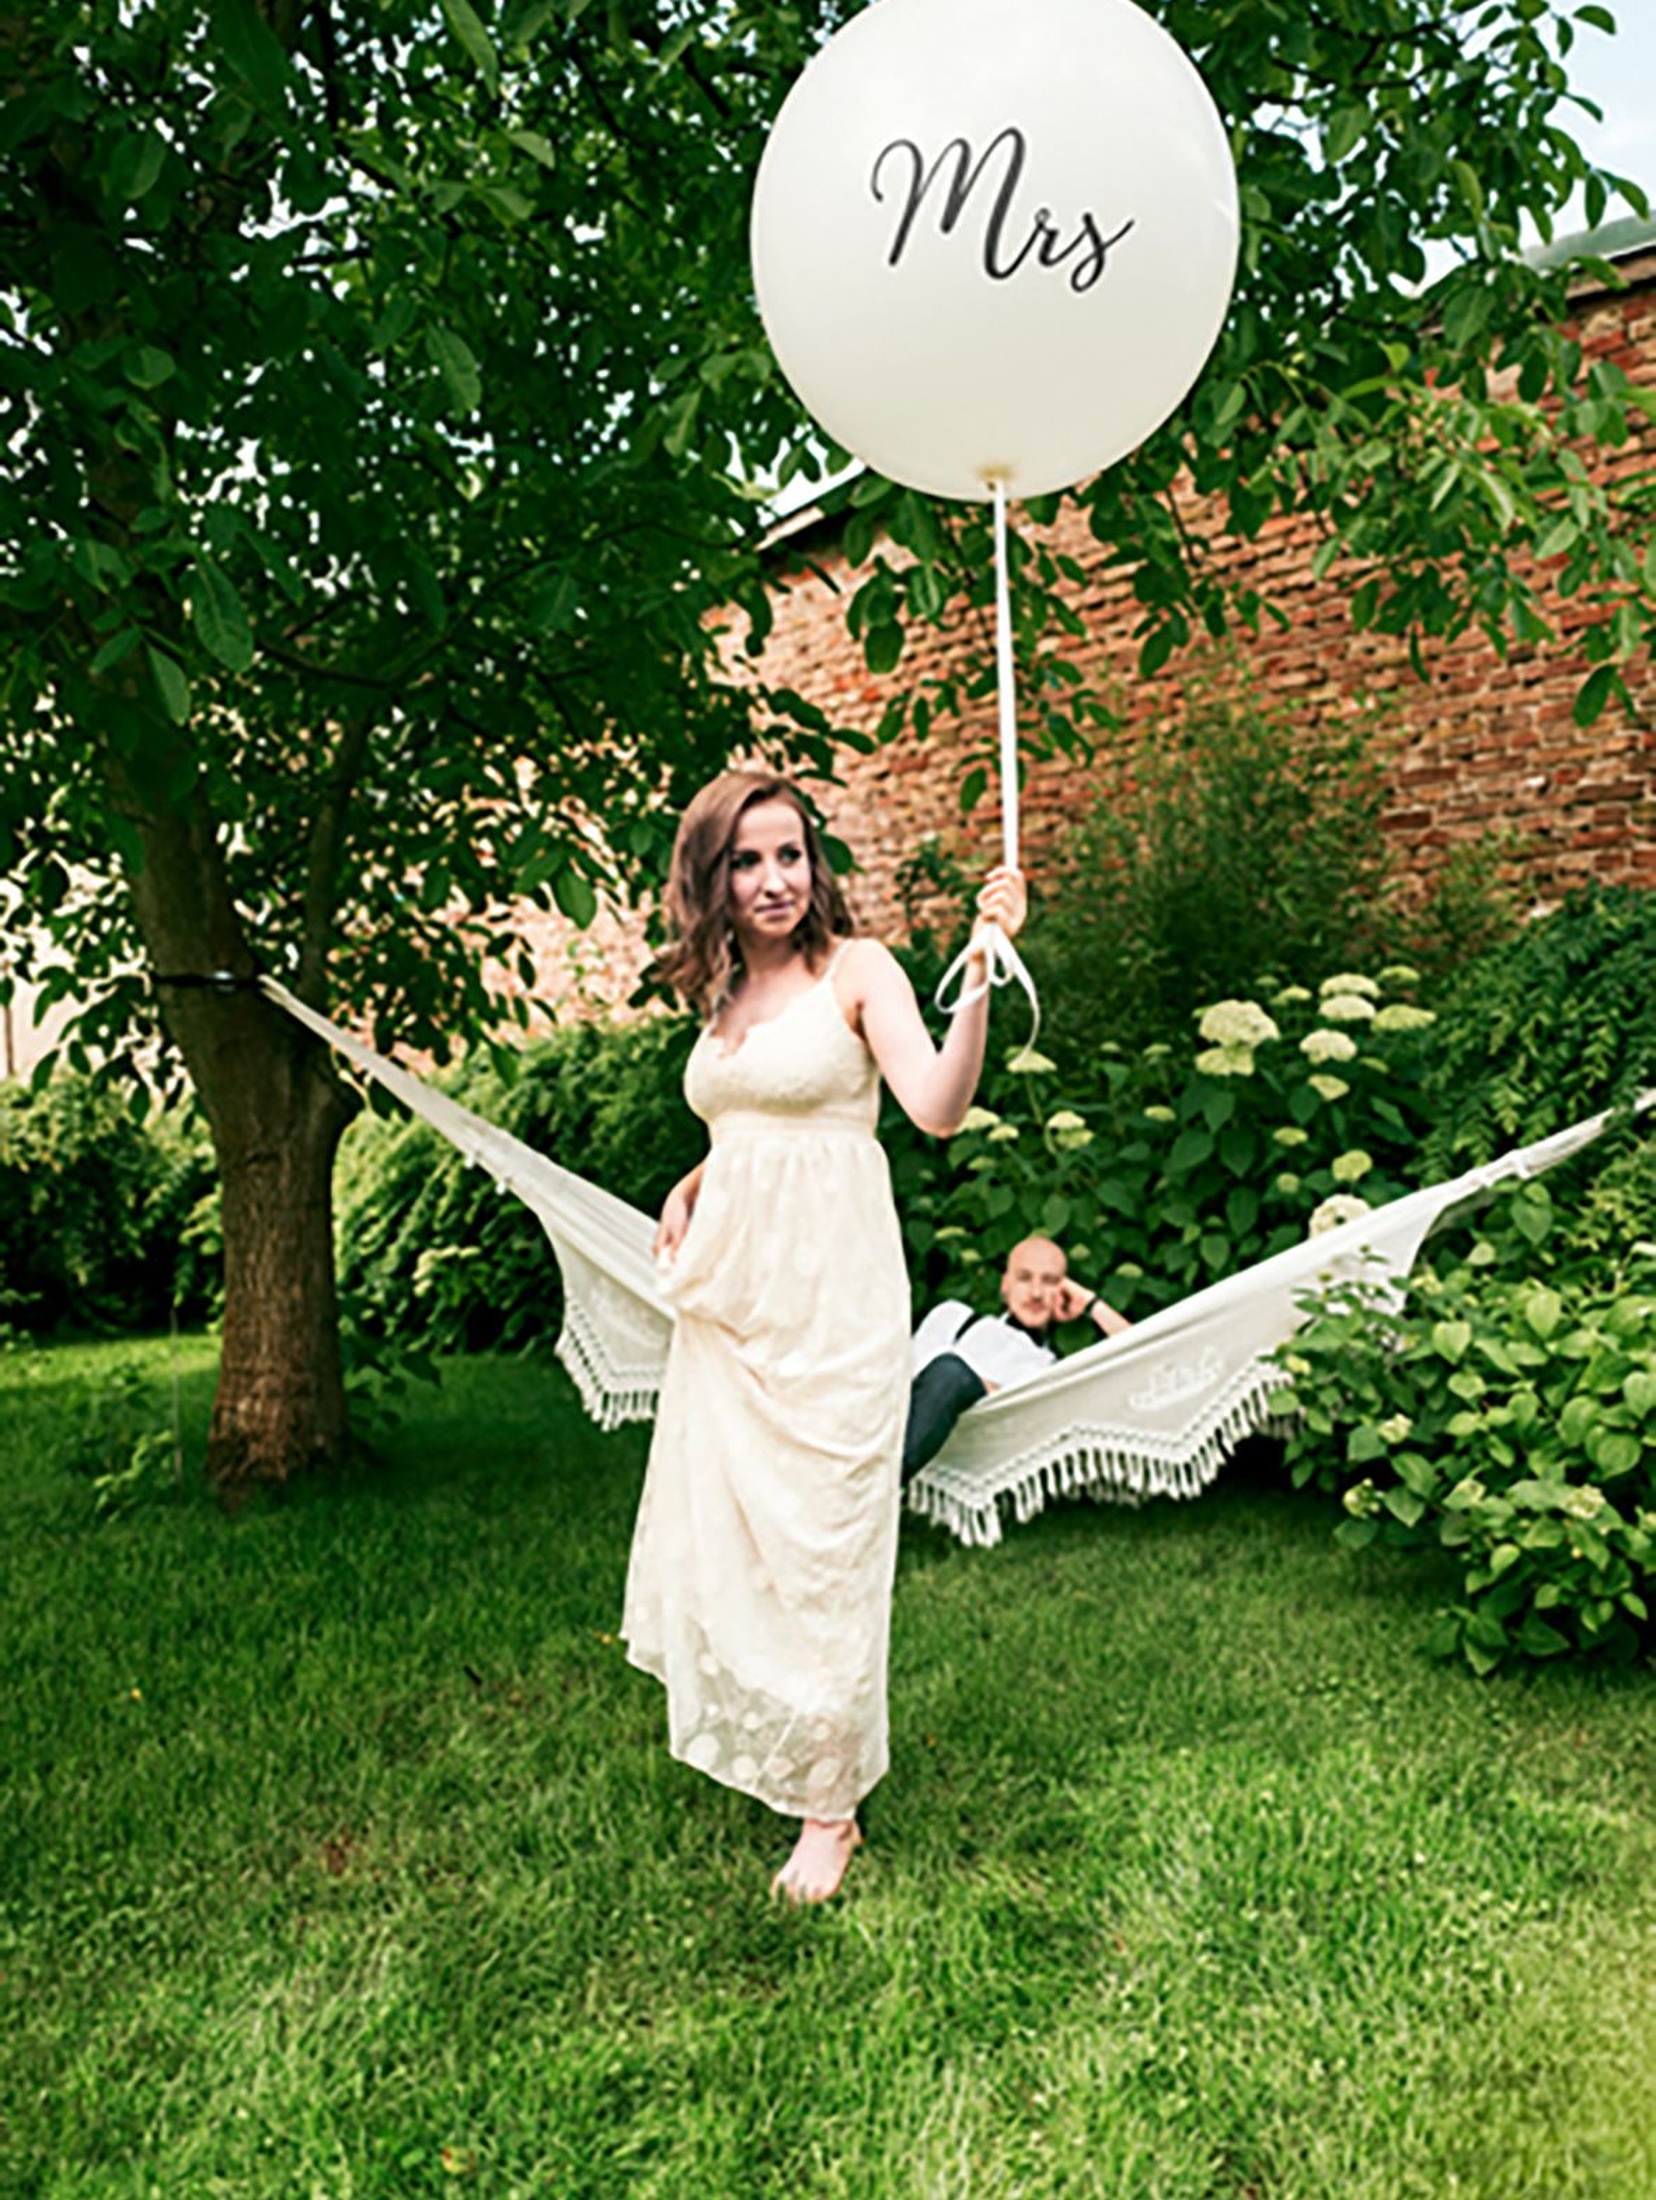 Balon Mrs średnica 1 metr- pastelowy biały